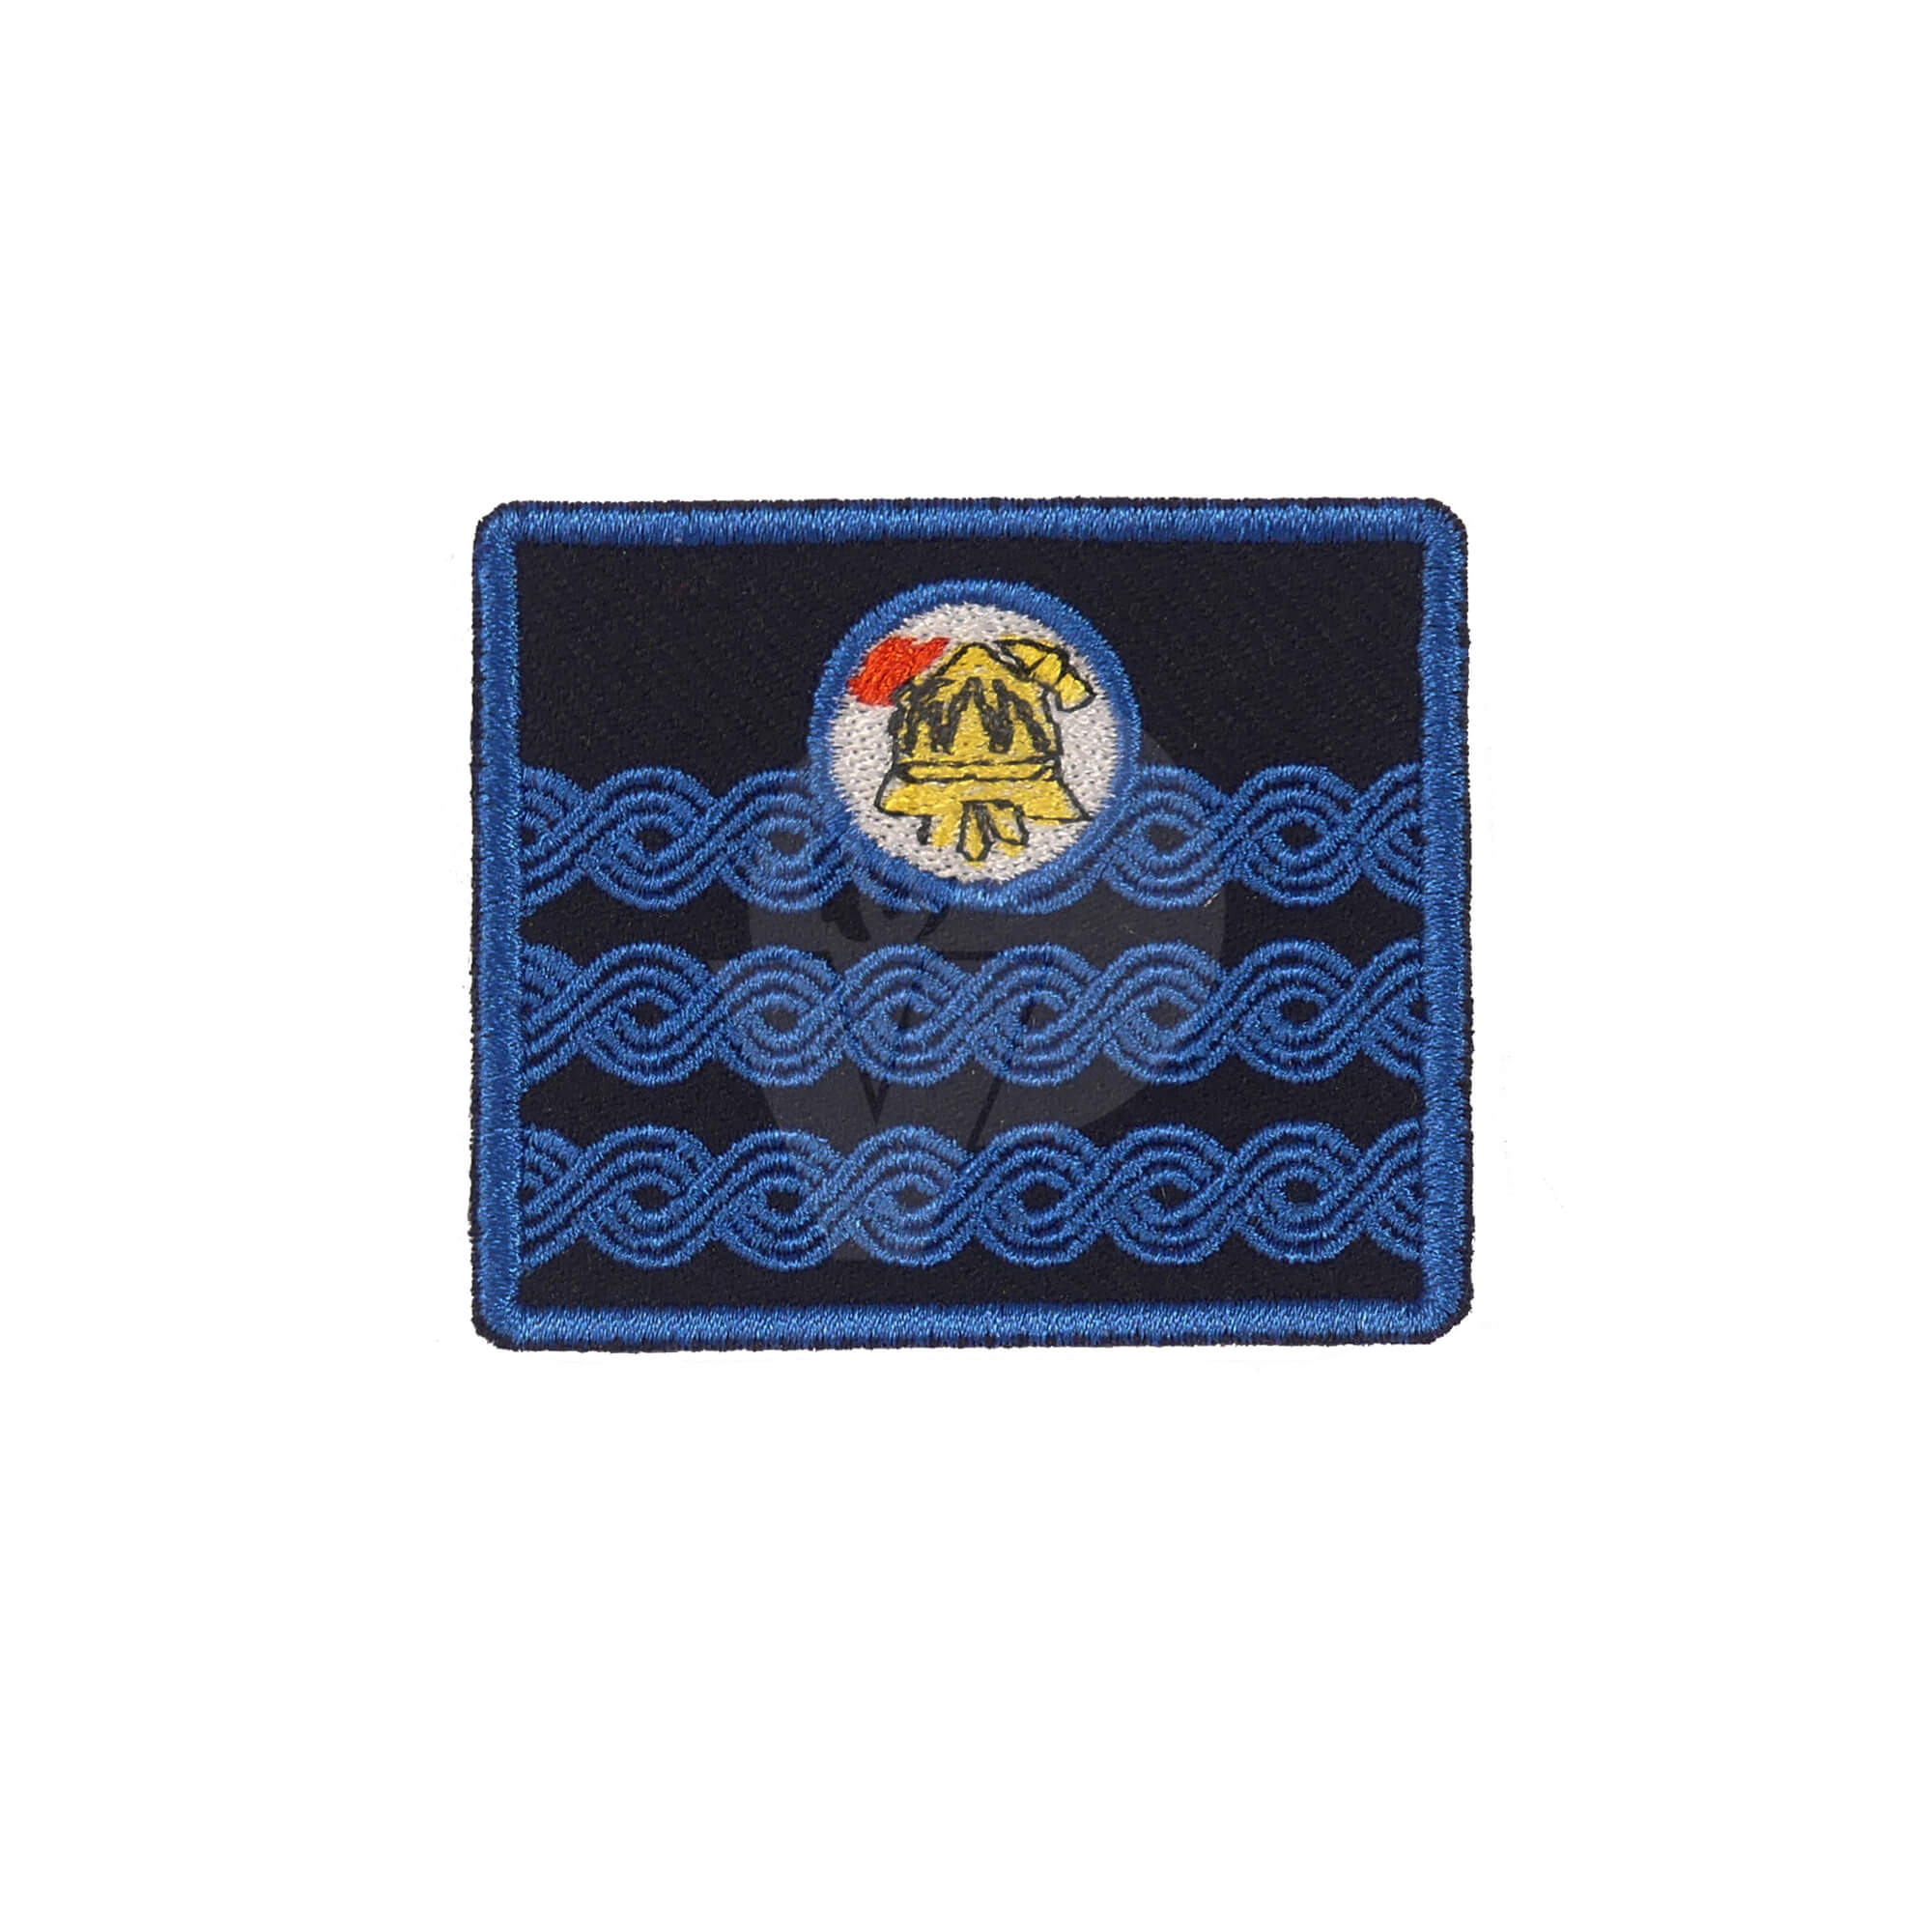 Firefighter Emblem for Work Suit